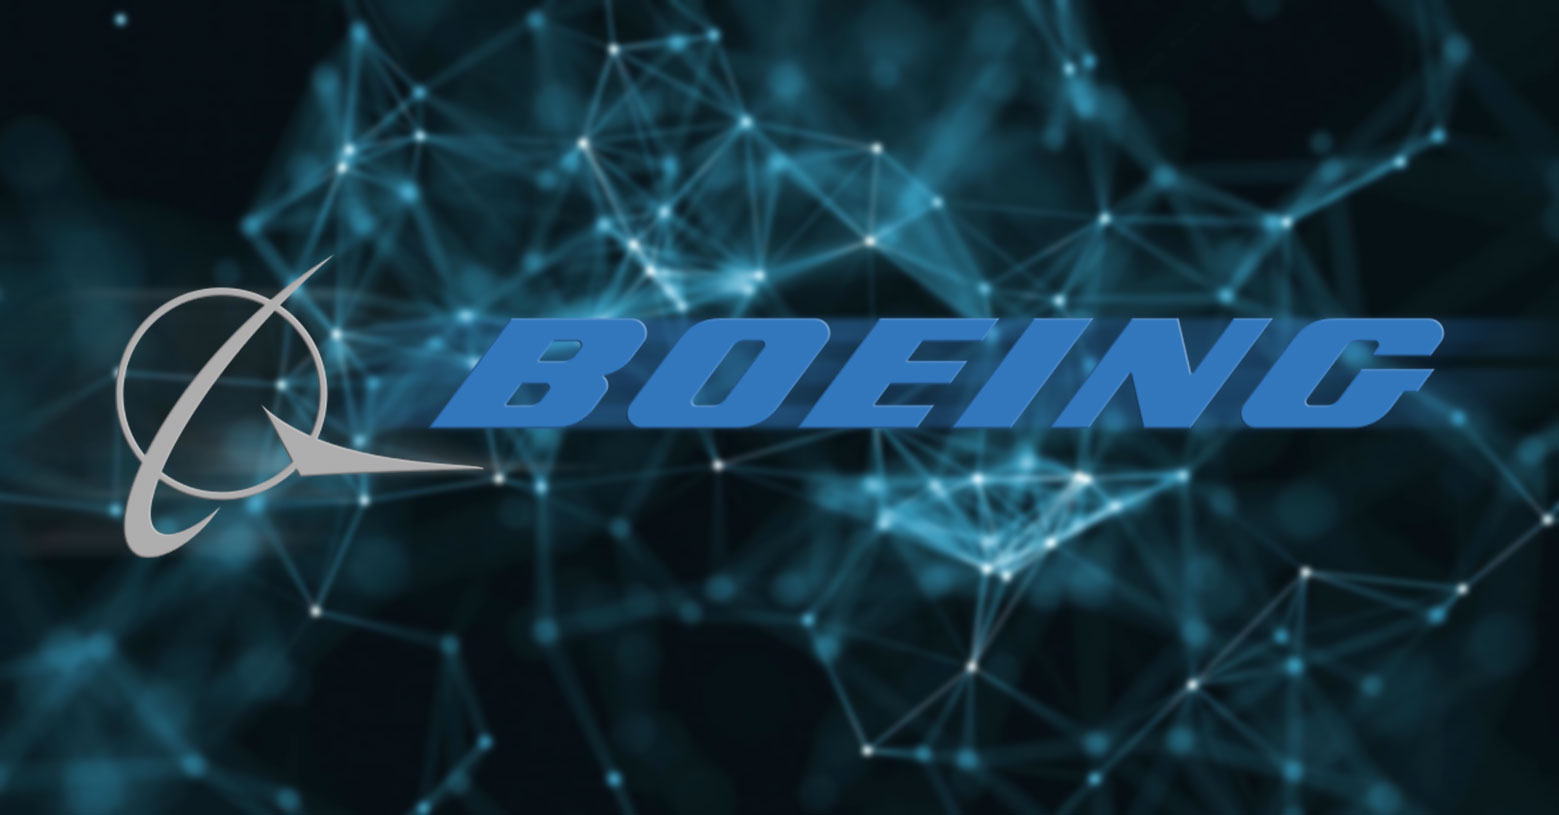 Boeing blockchain